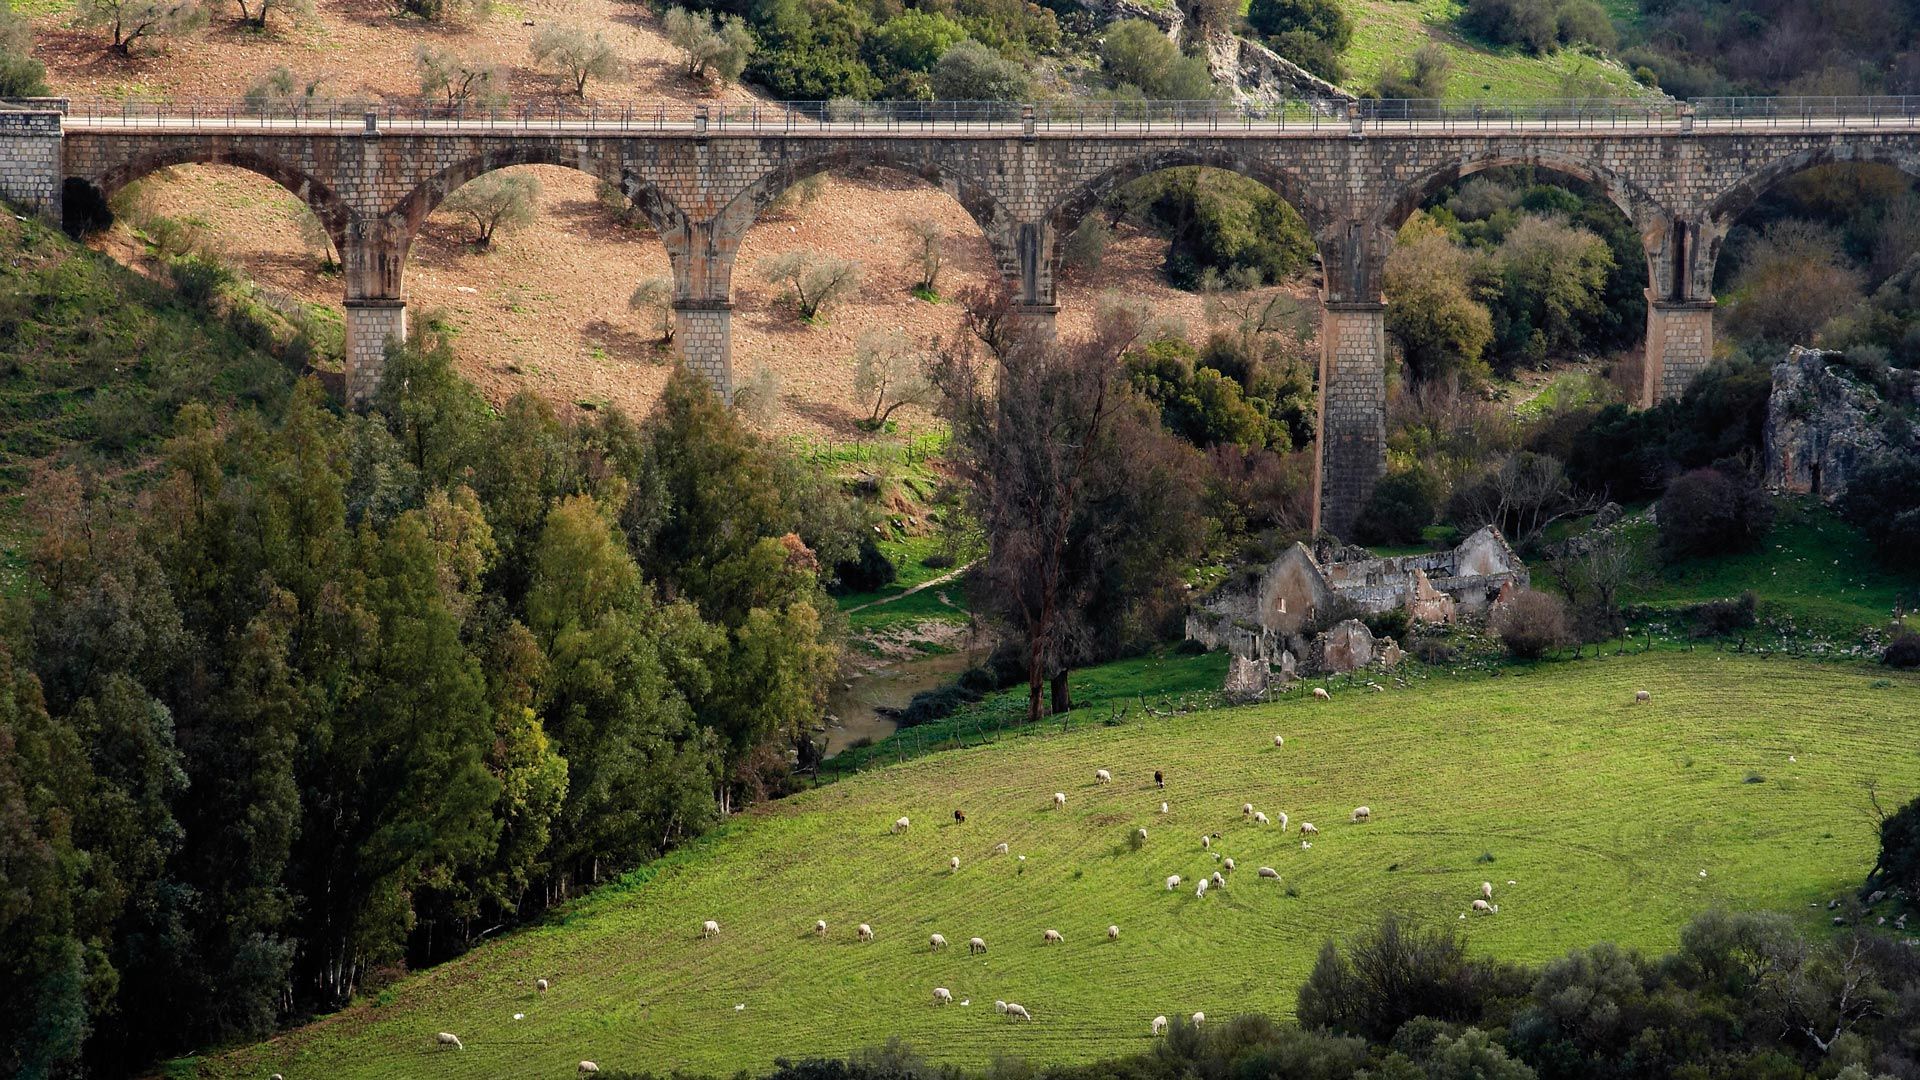 Ruta por la Vía Verde de la Sierra de Cádiz; Viaducto y ganado en la Vía Verde